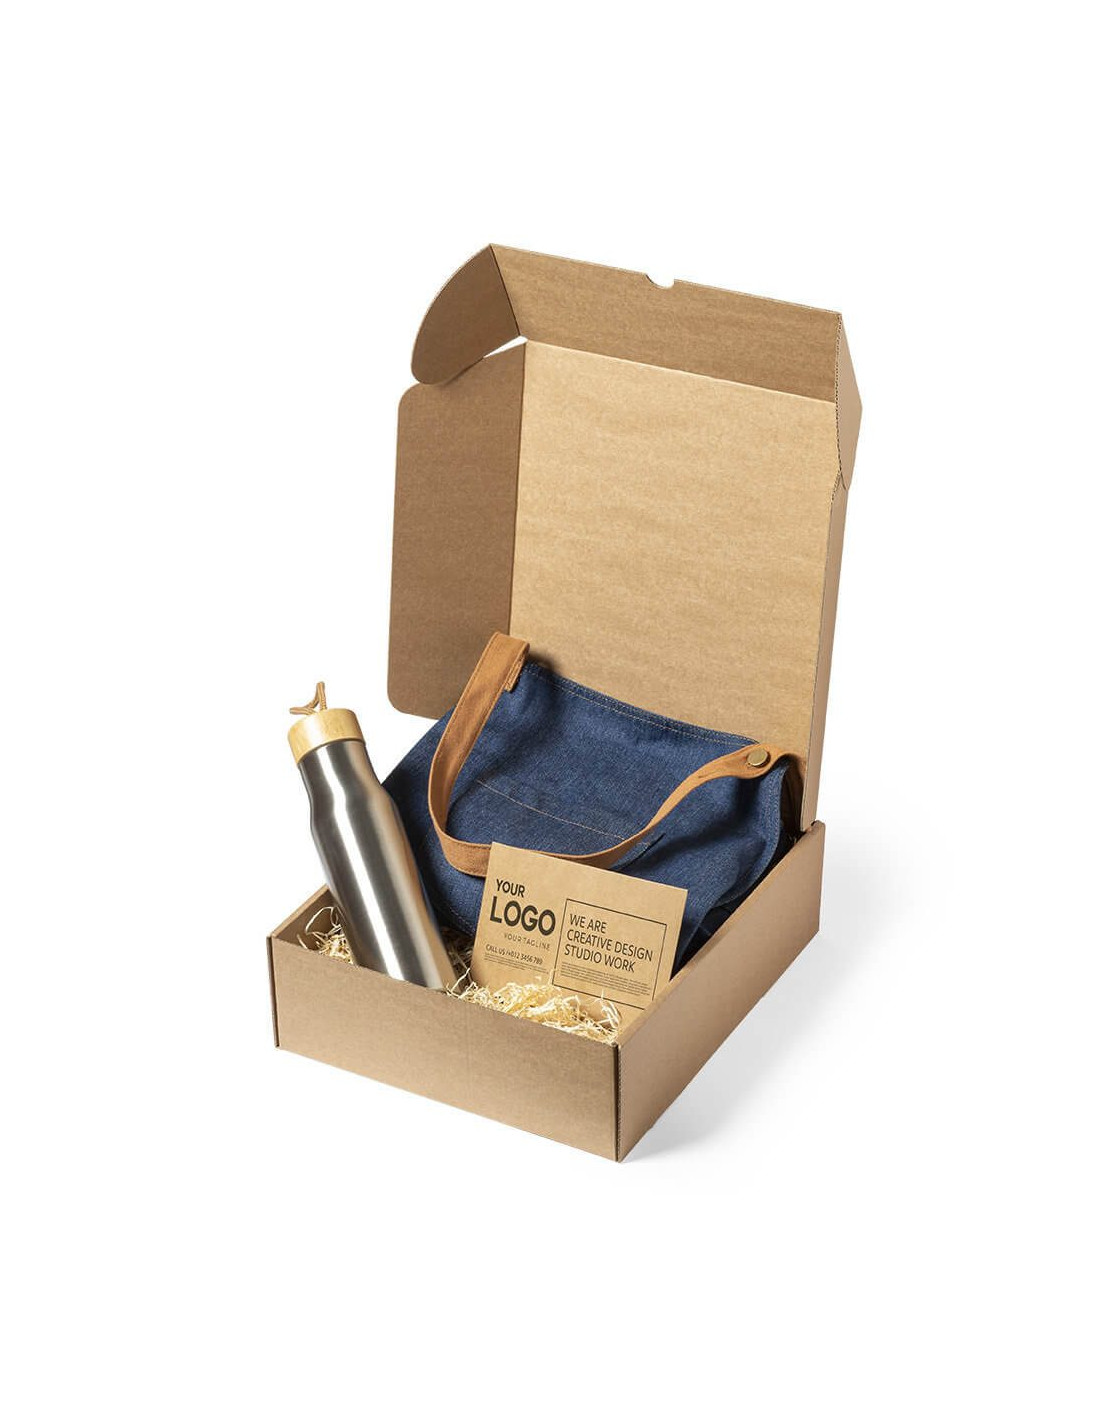 Embalaje de protección de cartón ondulado - 360 Eco Packaging